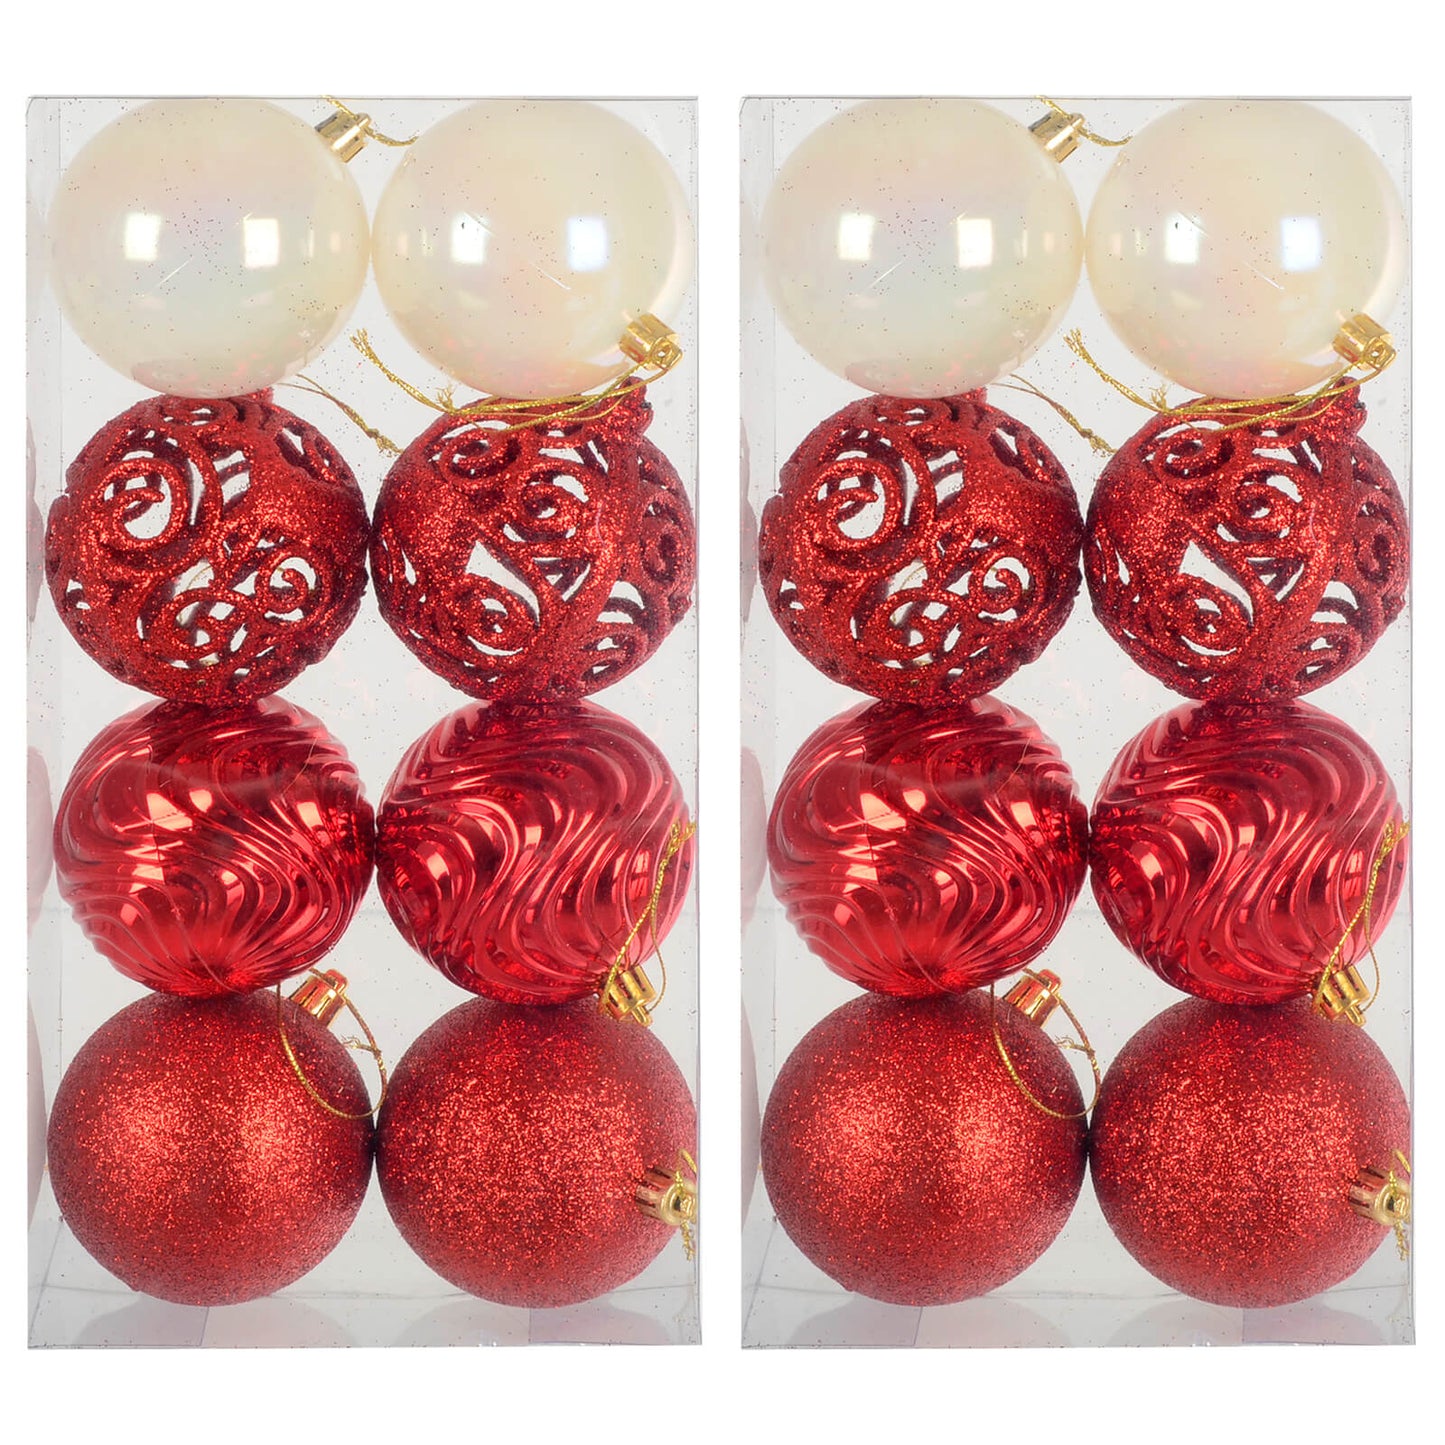 Mr Crimbo 16 x 8cm Christmas Tree Baubles Mixed Design Decorations - MrCrimbo.co.uk -XS7473_2 - Red -